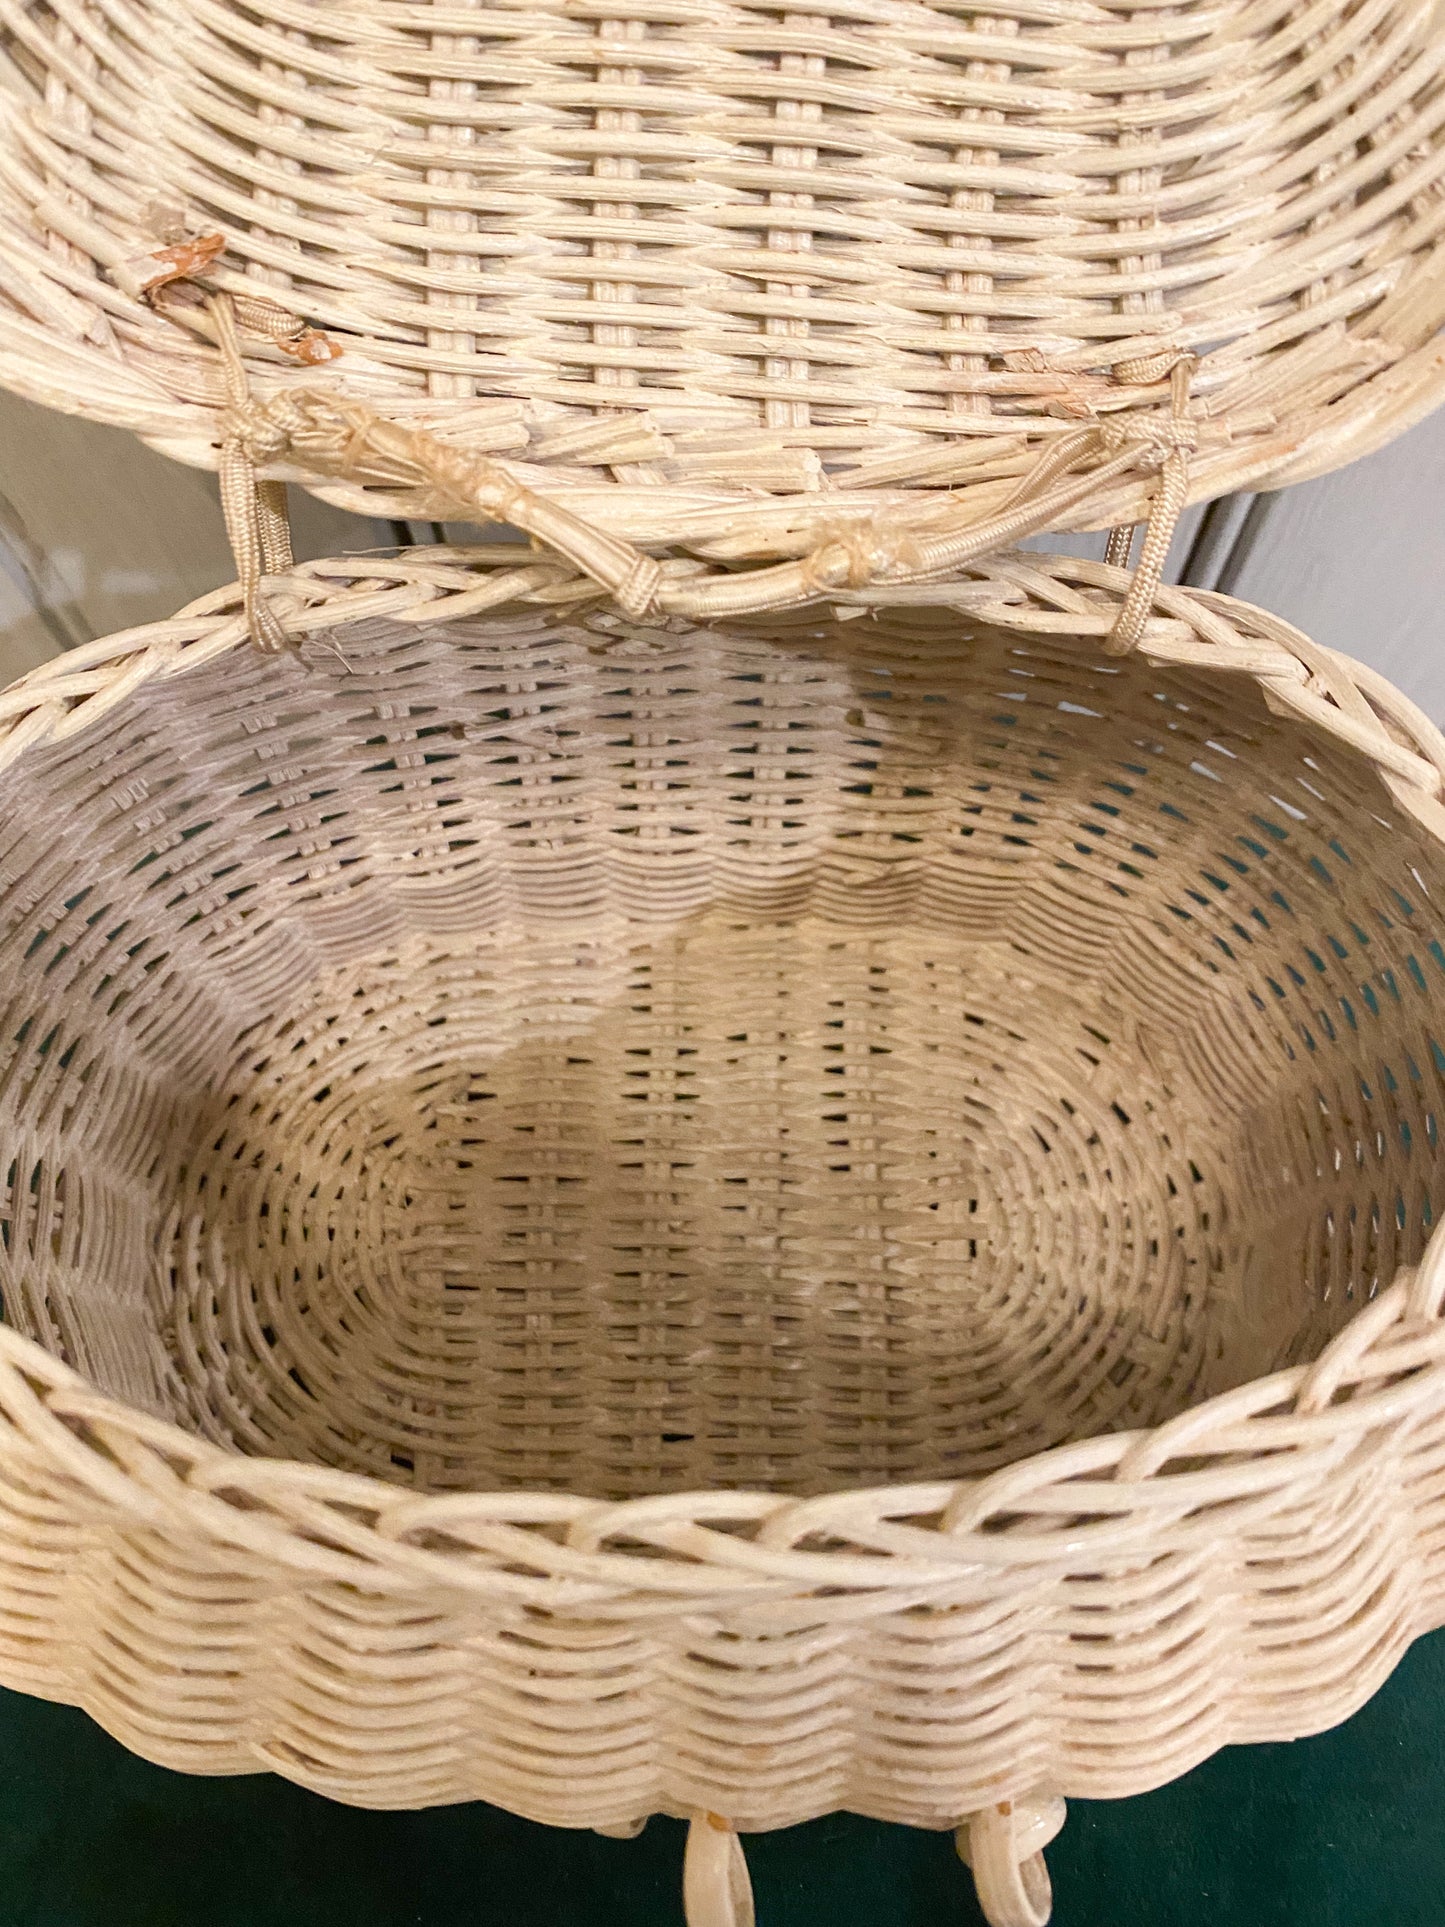 Mini White Picnic Basket Handbag